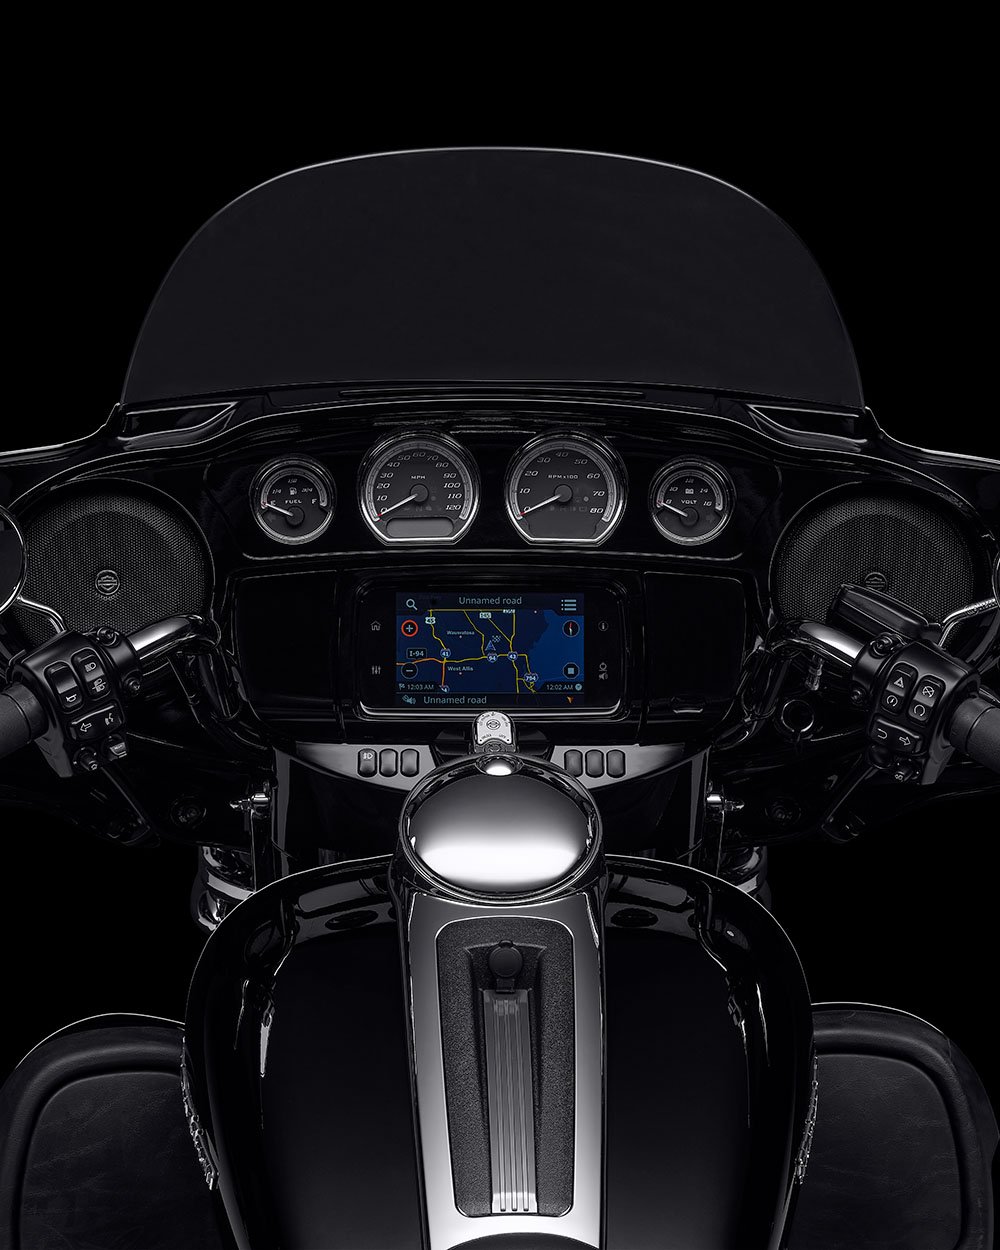 System multimedialny Boom Box GTS w motocyklu Ultra Limited